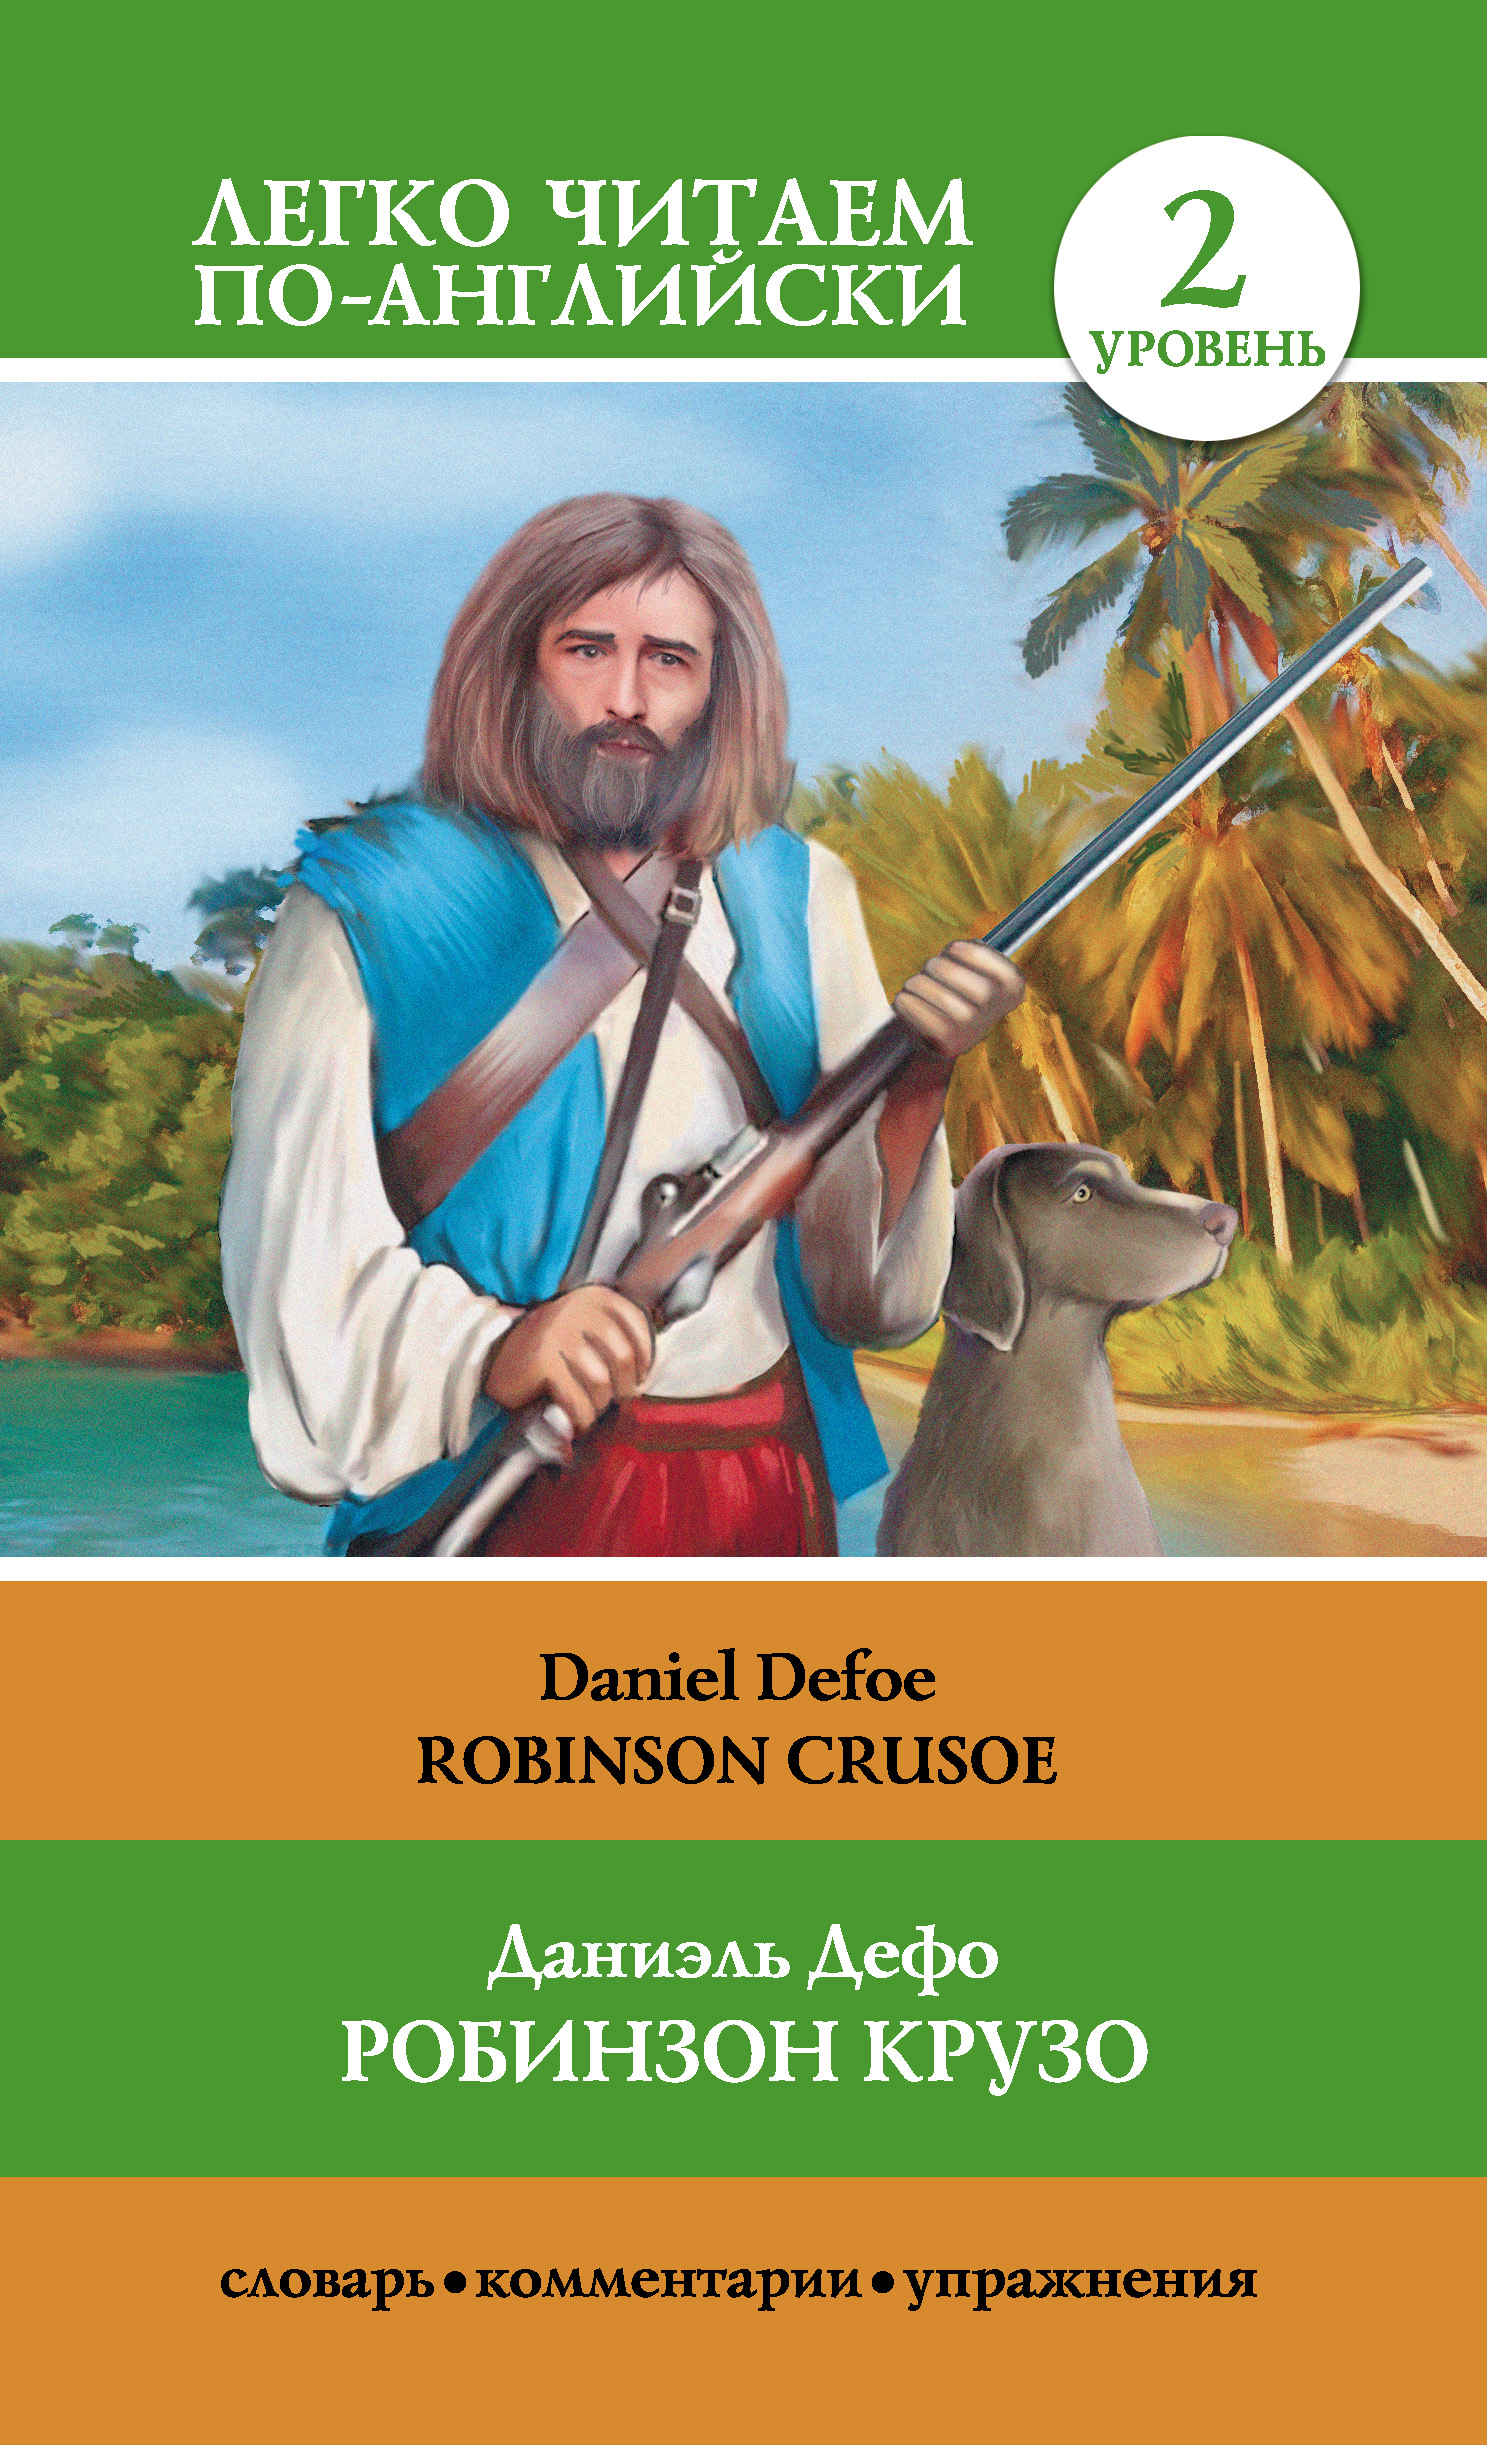 Книга Робинзон Крузо / Robinson Crusoe из серии Легко читаем по-английски, созданная Даниэль Дефо, Нина Анашина, может относится к жанру Книги о Путешествиях, Иностранные языки, Зарубежная классика. Стоимость электронной книги Робинзон Крузо / Robinson Crusoe с идентификатором 8653486 составляет 79.99 руб.